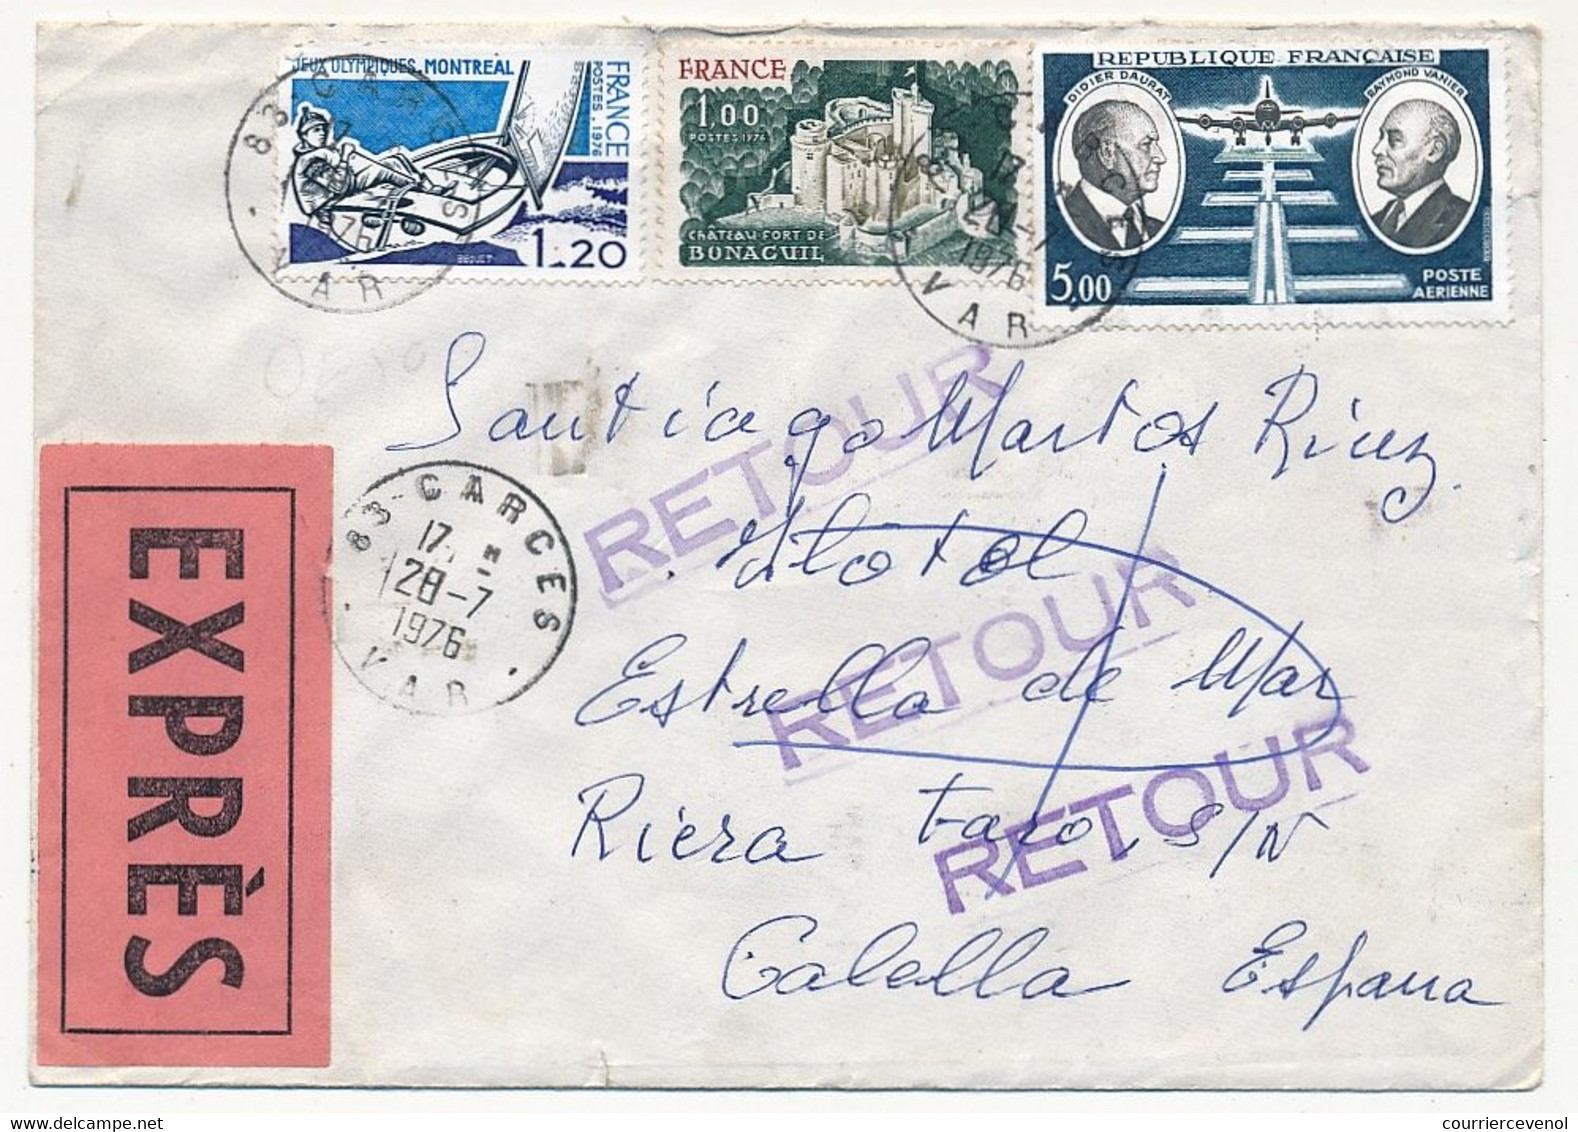 FRANCE - Enveloppe Pour Espagne - EXPRÈS - Affranchissement Composé Depuis GARCES 1976 - Briefe U. Dokumente